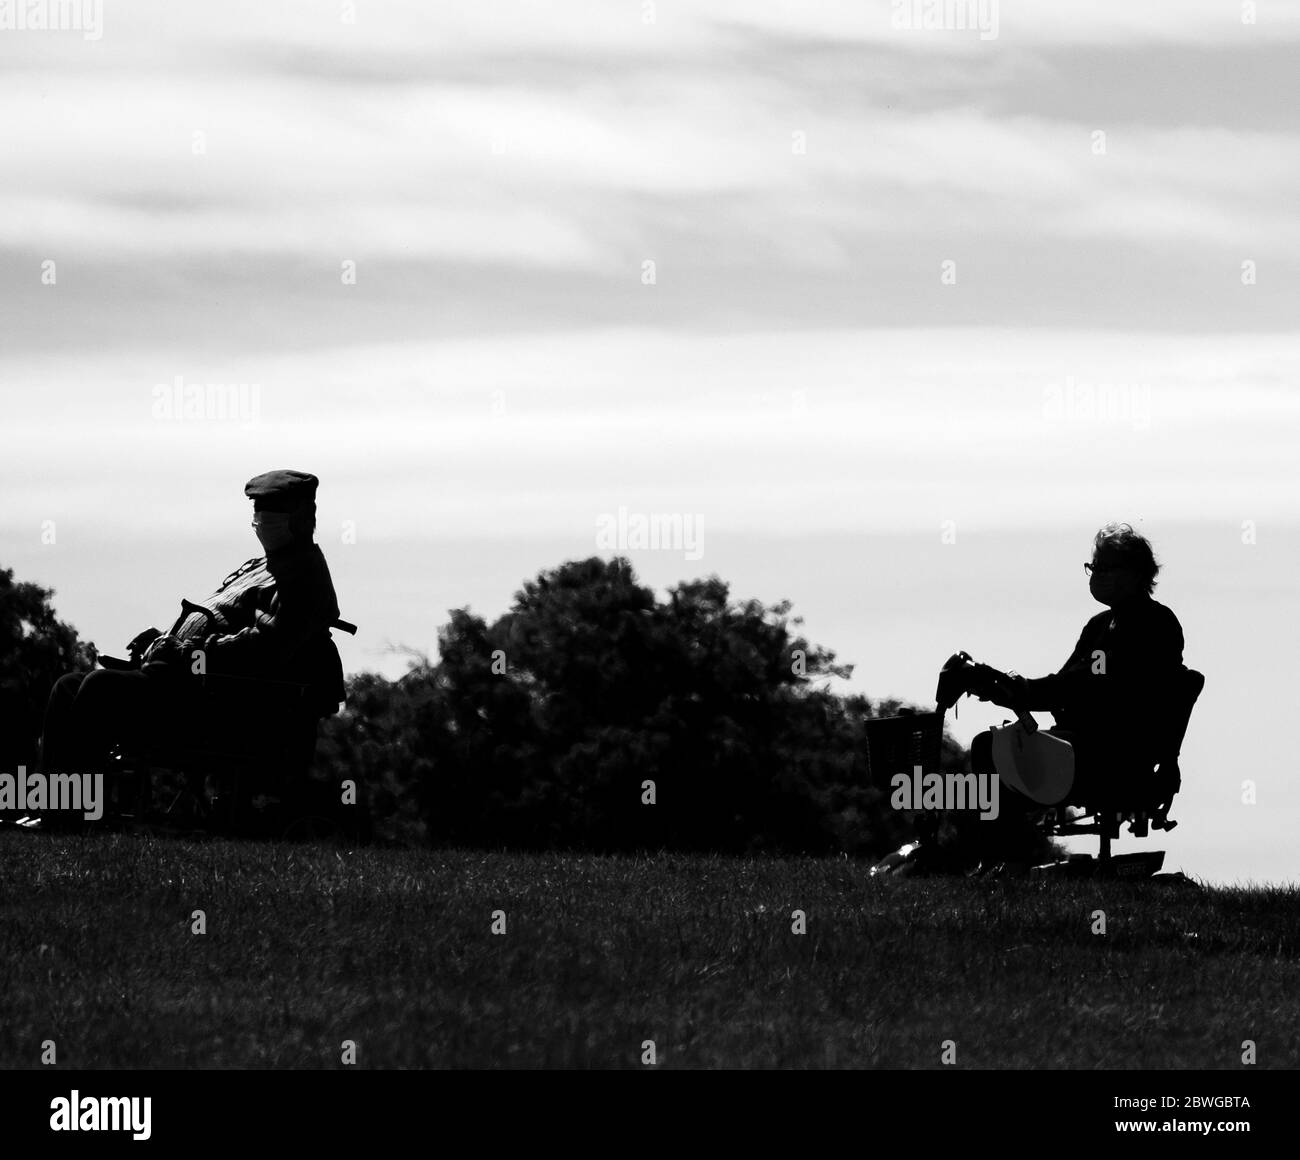 Deux personnes âgées sur des scooters de mobilité observant des distances sociales Banque D'Images